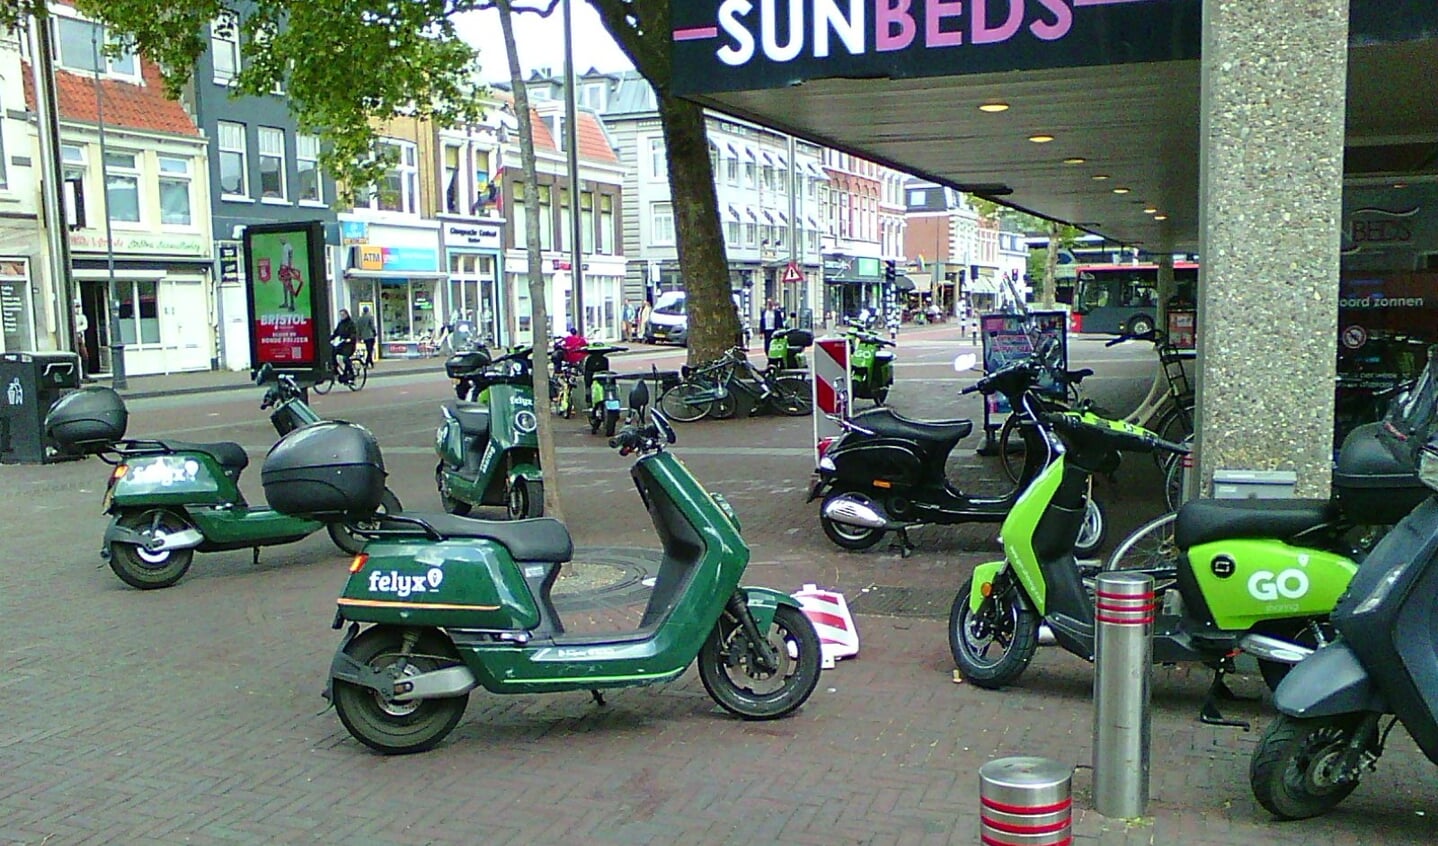 De deelscooters zorgen voor een rommelig beeld in het centrum van Haarlem.